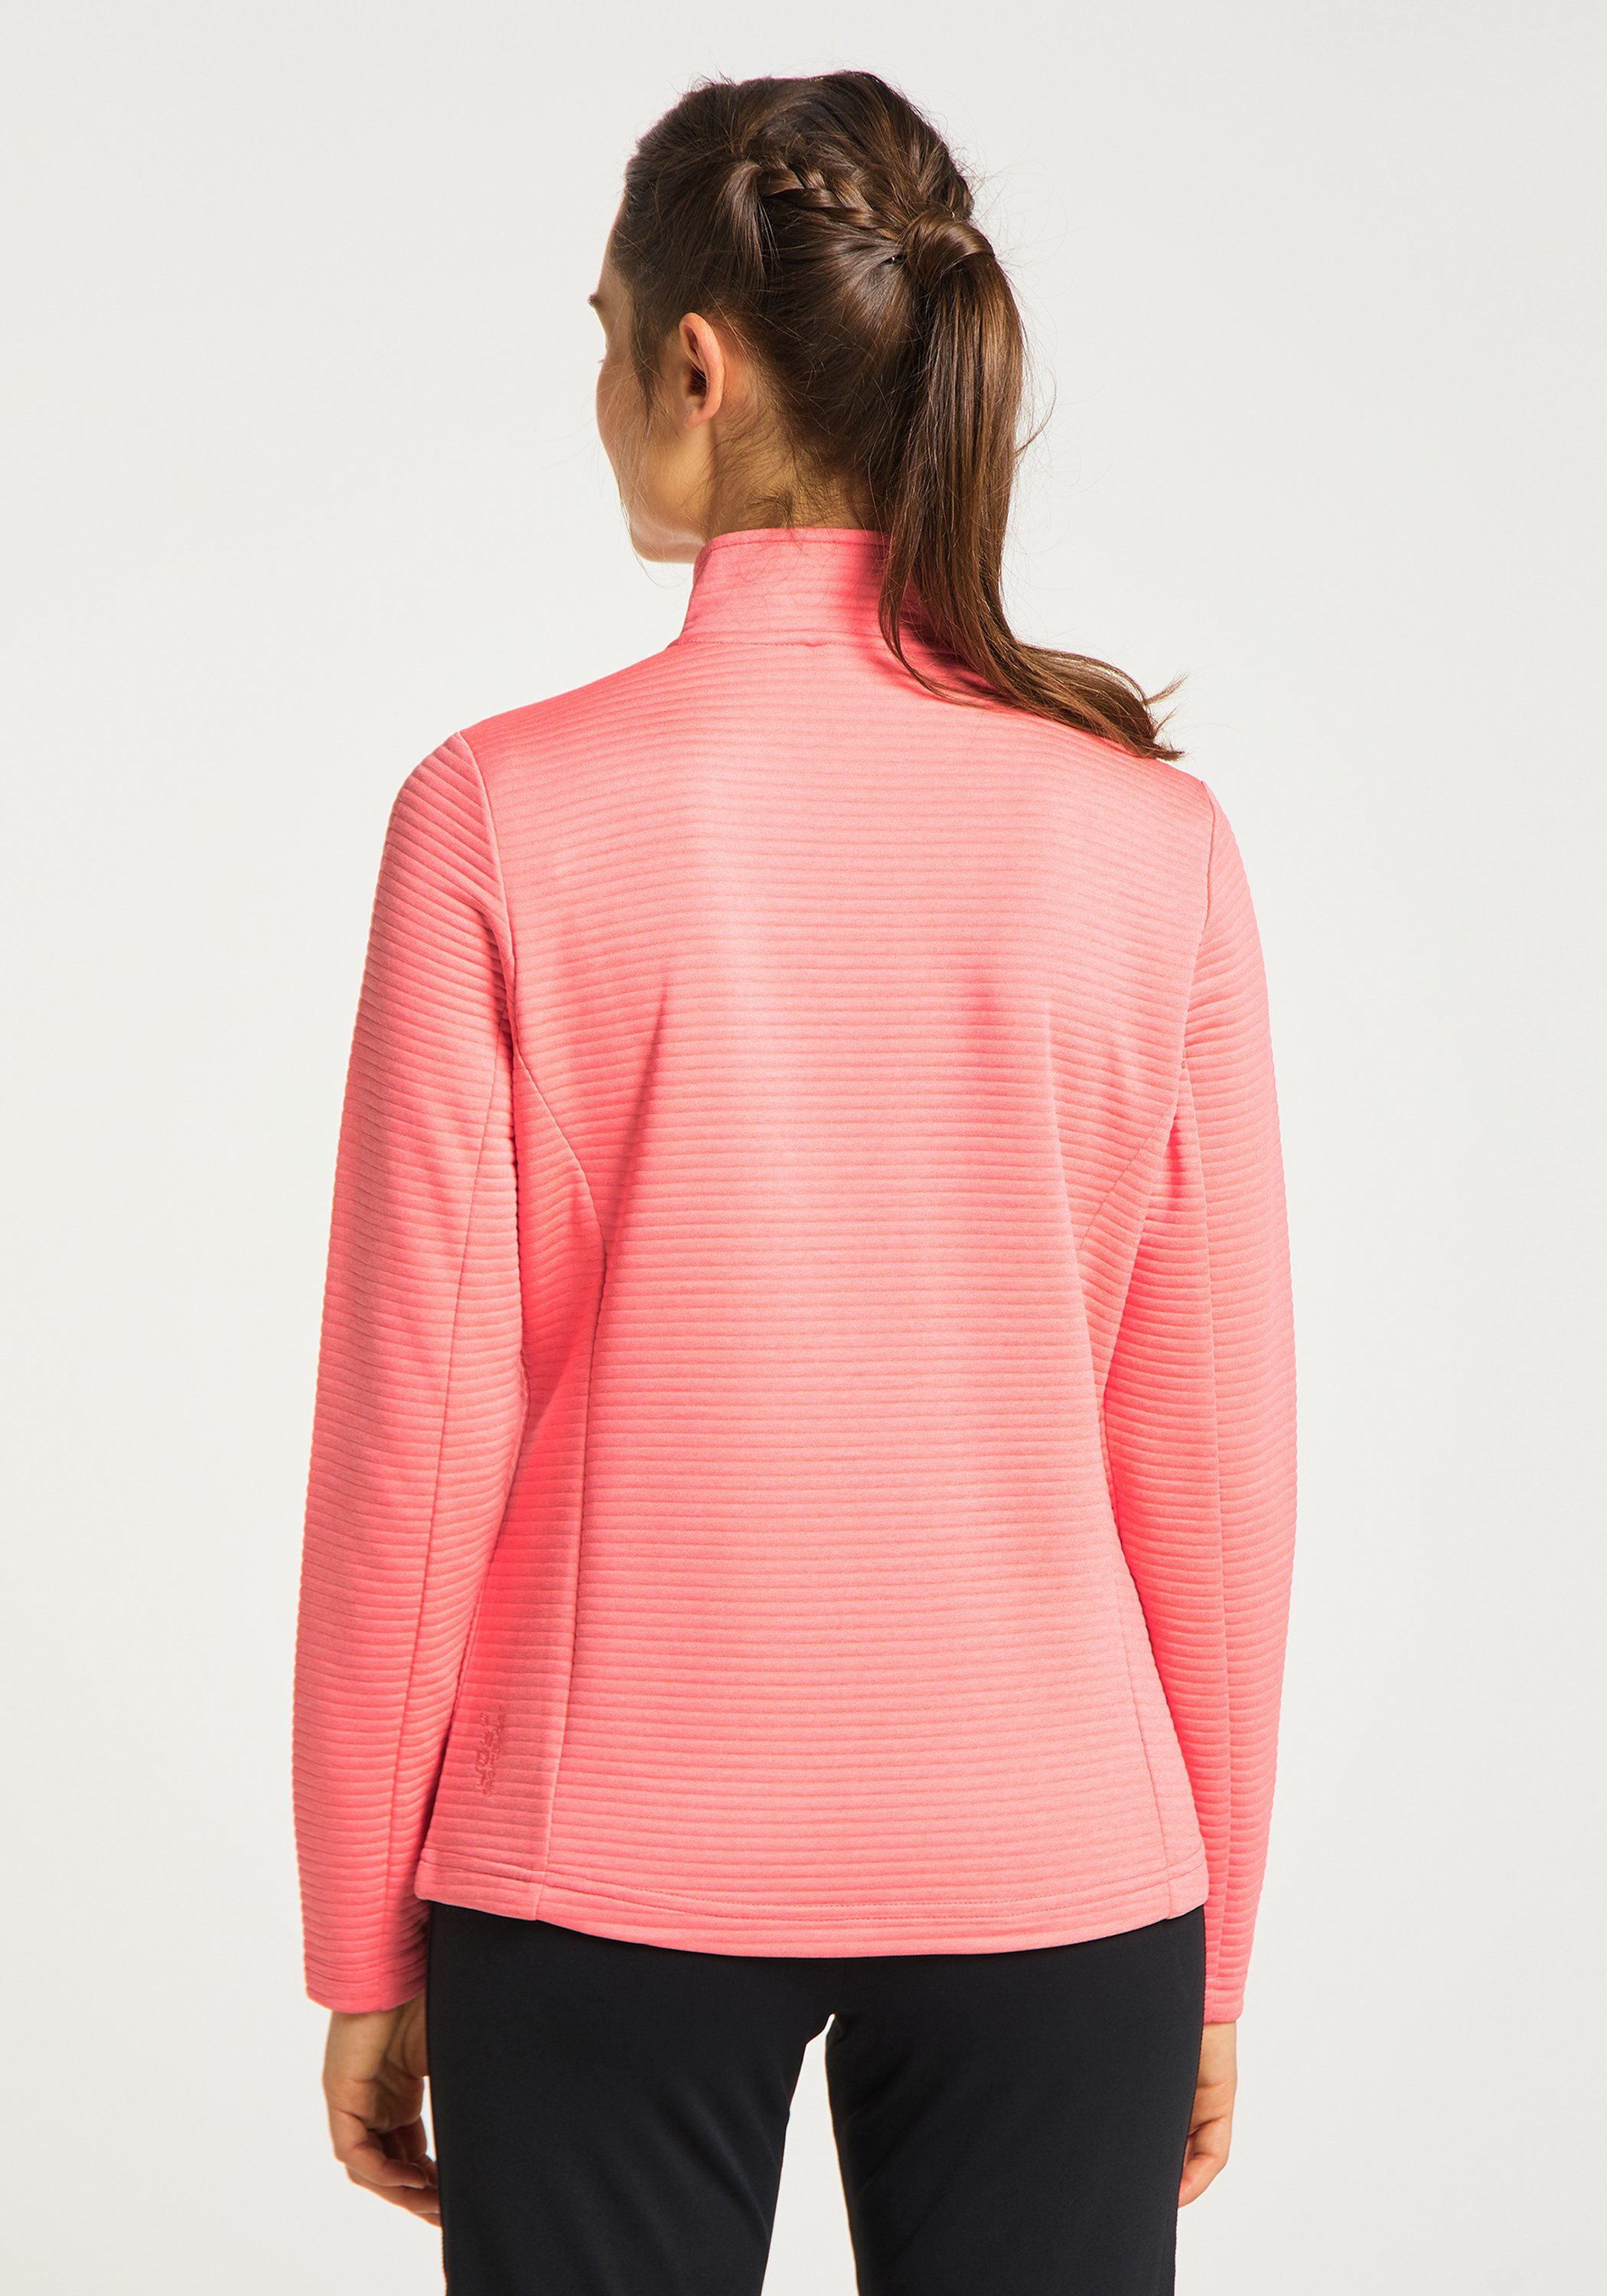 Joy Sportswear Trainingsjacke Jacke pink PEGGY coral melange